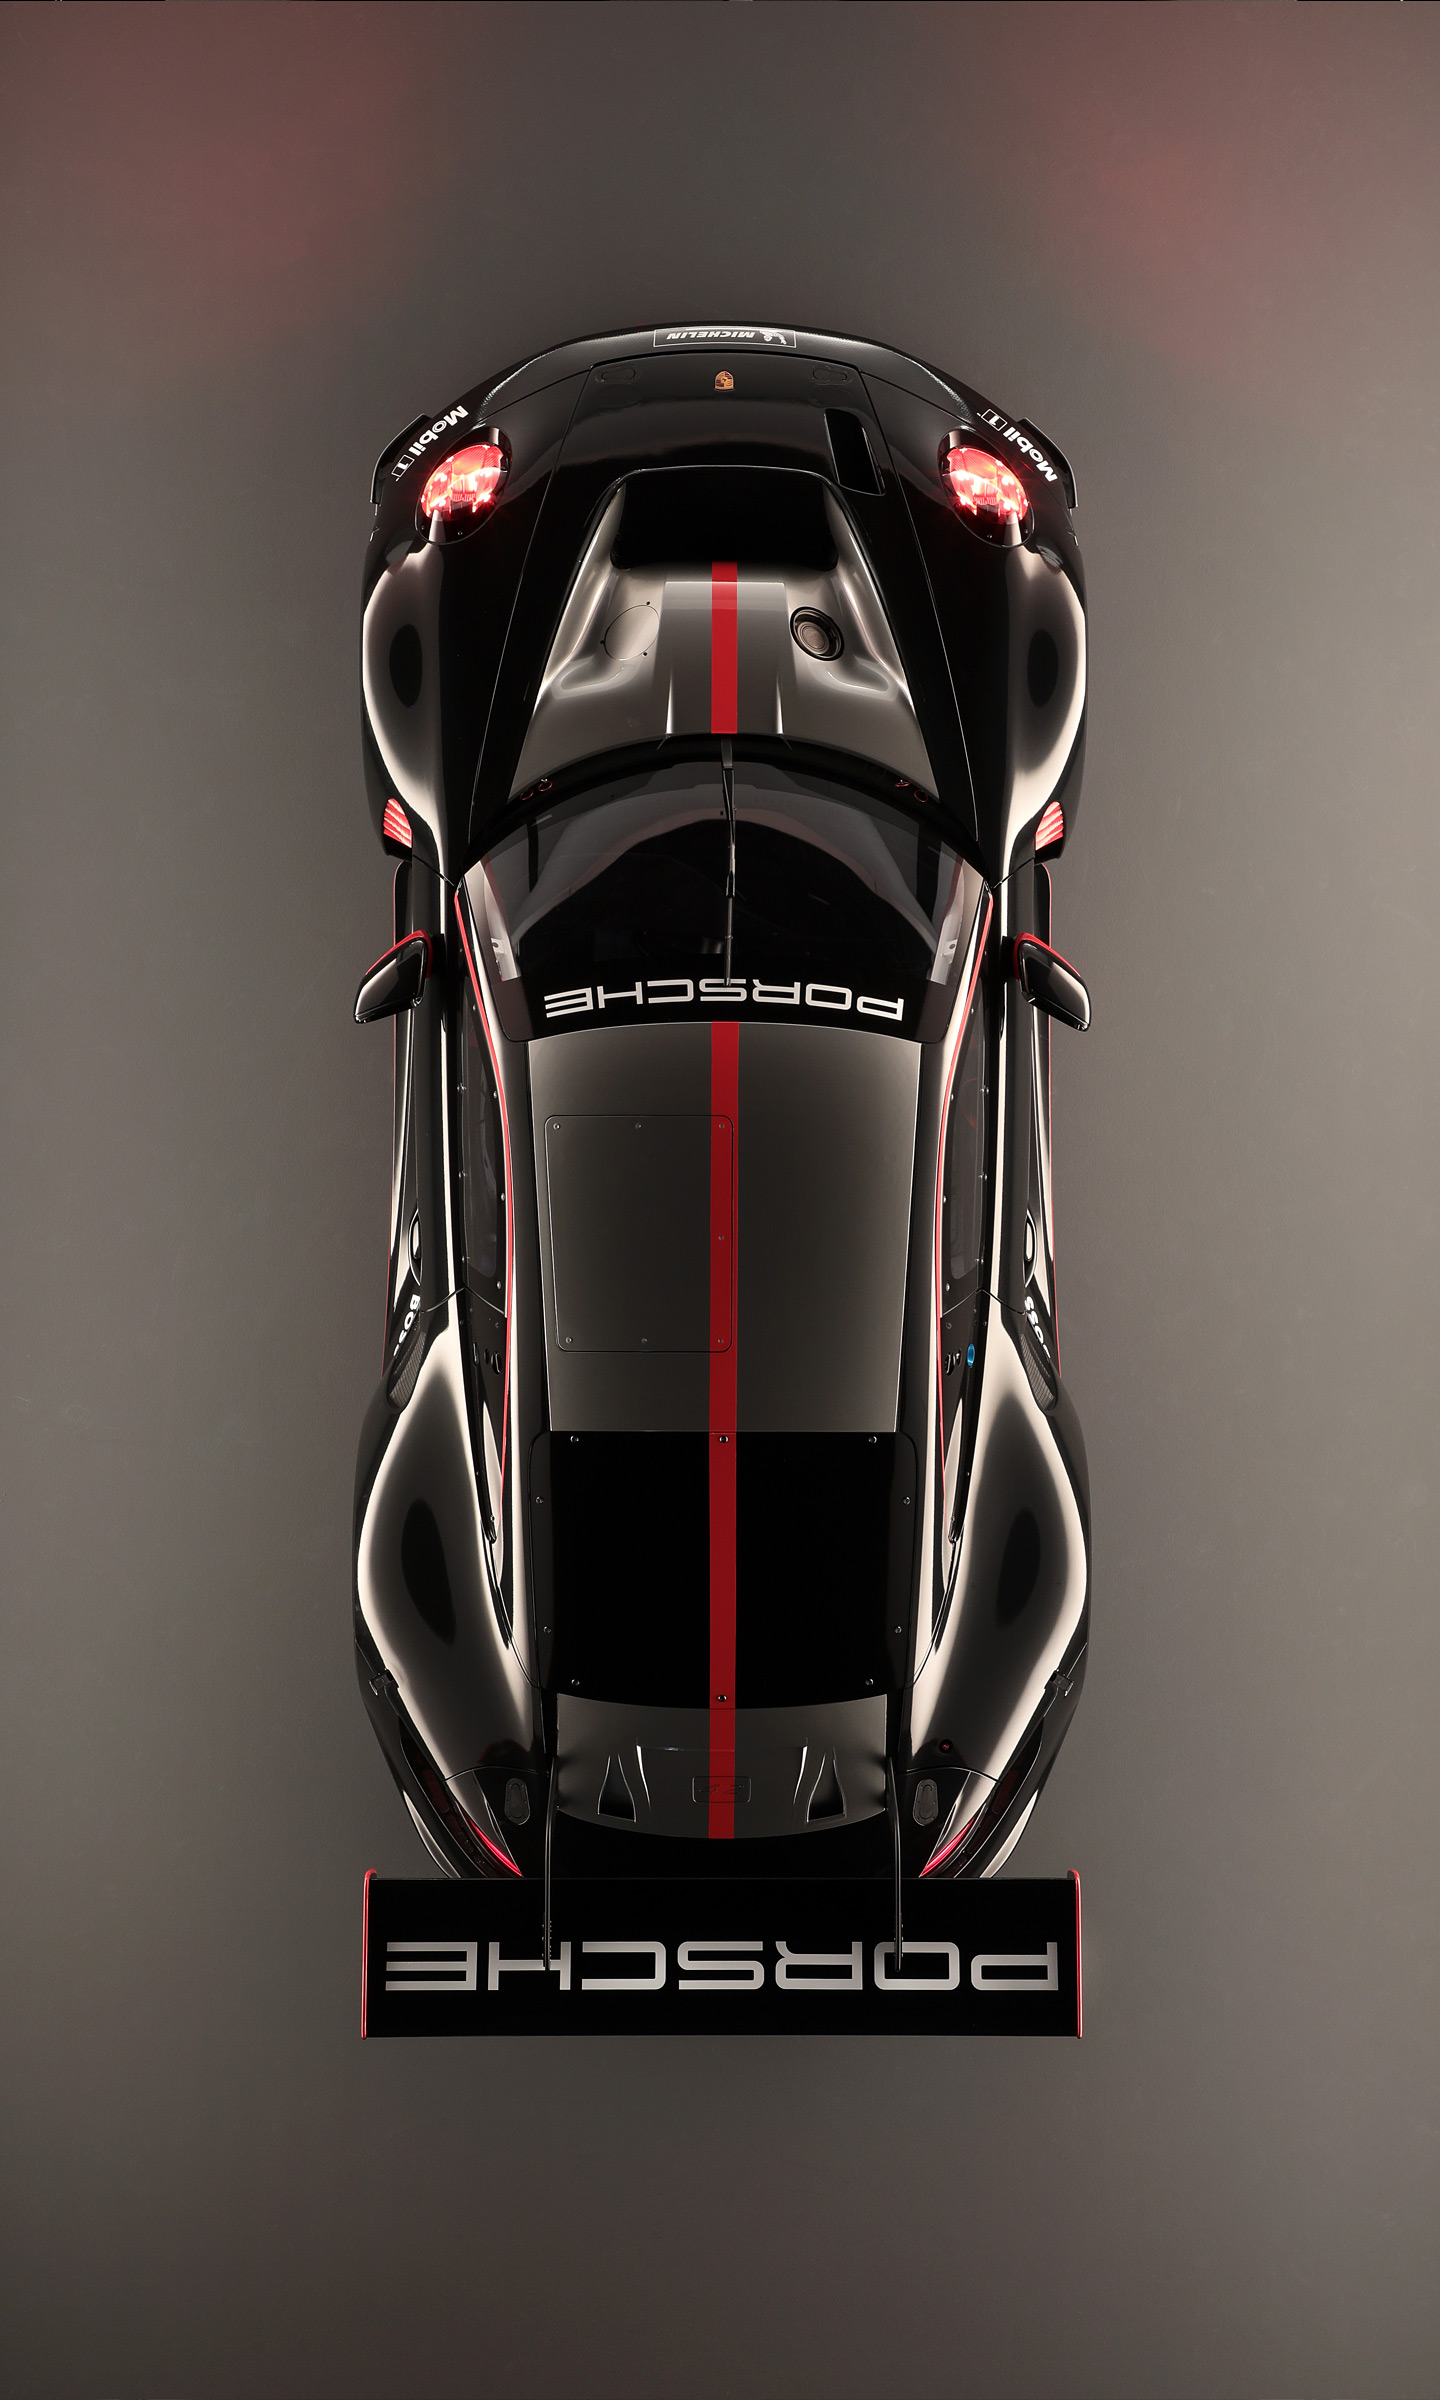  2023 Porsche 911 GT3 R Wallpaper.